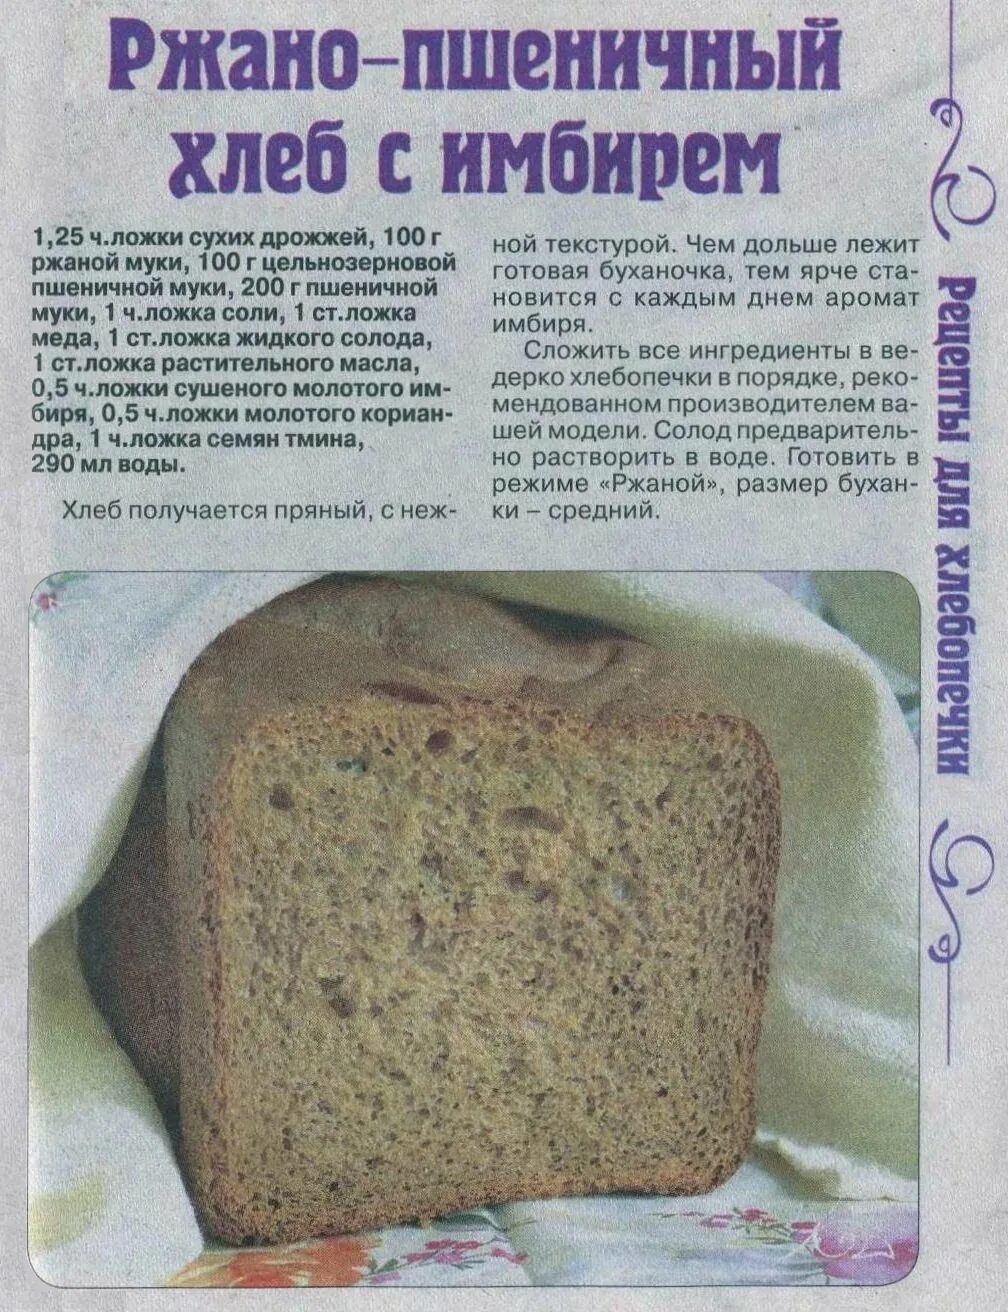 Рецепт хлеба в хлебопечке. Тесто на хлеб в хлебопечке. Домашний хлеб в хлебопечке. Рецептура ржаного хлеба. Хлебопечка форум рецепты